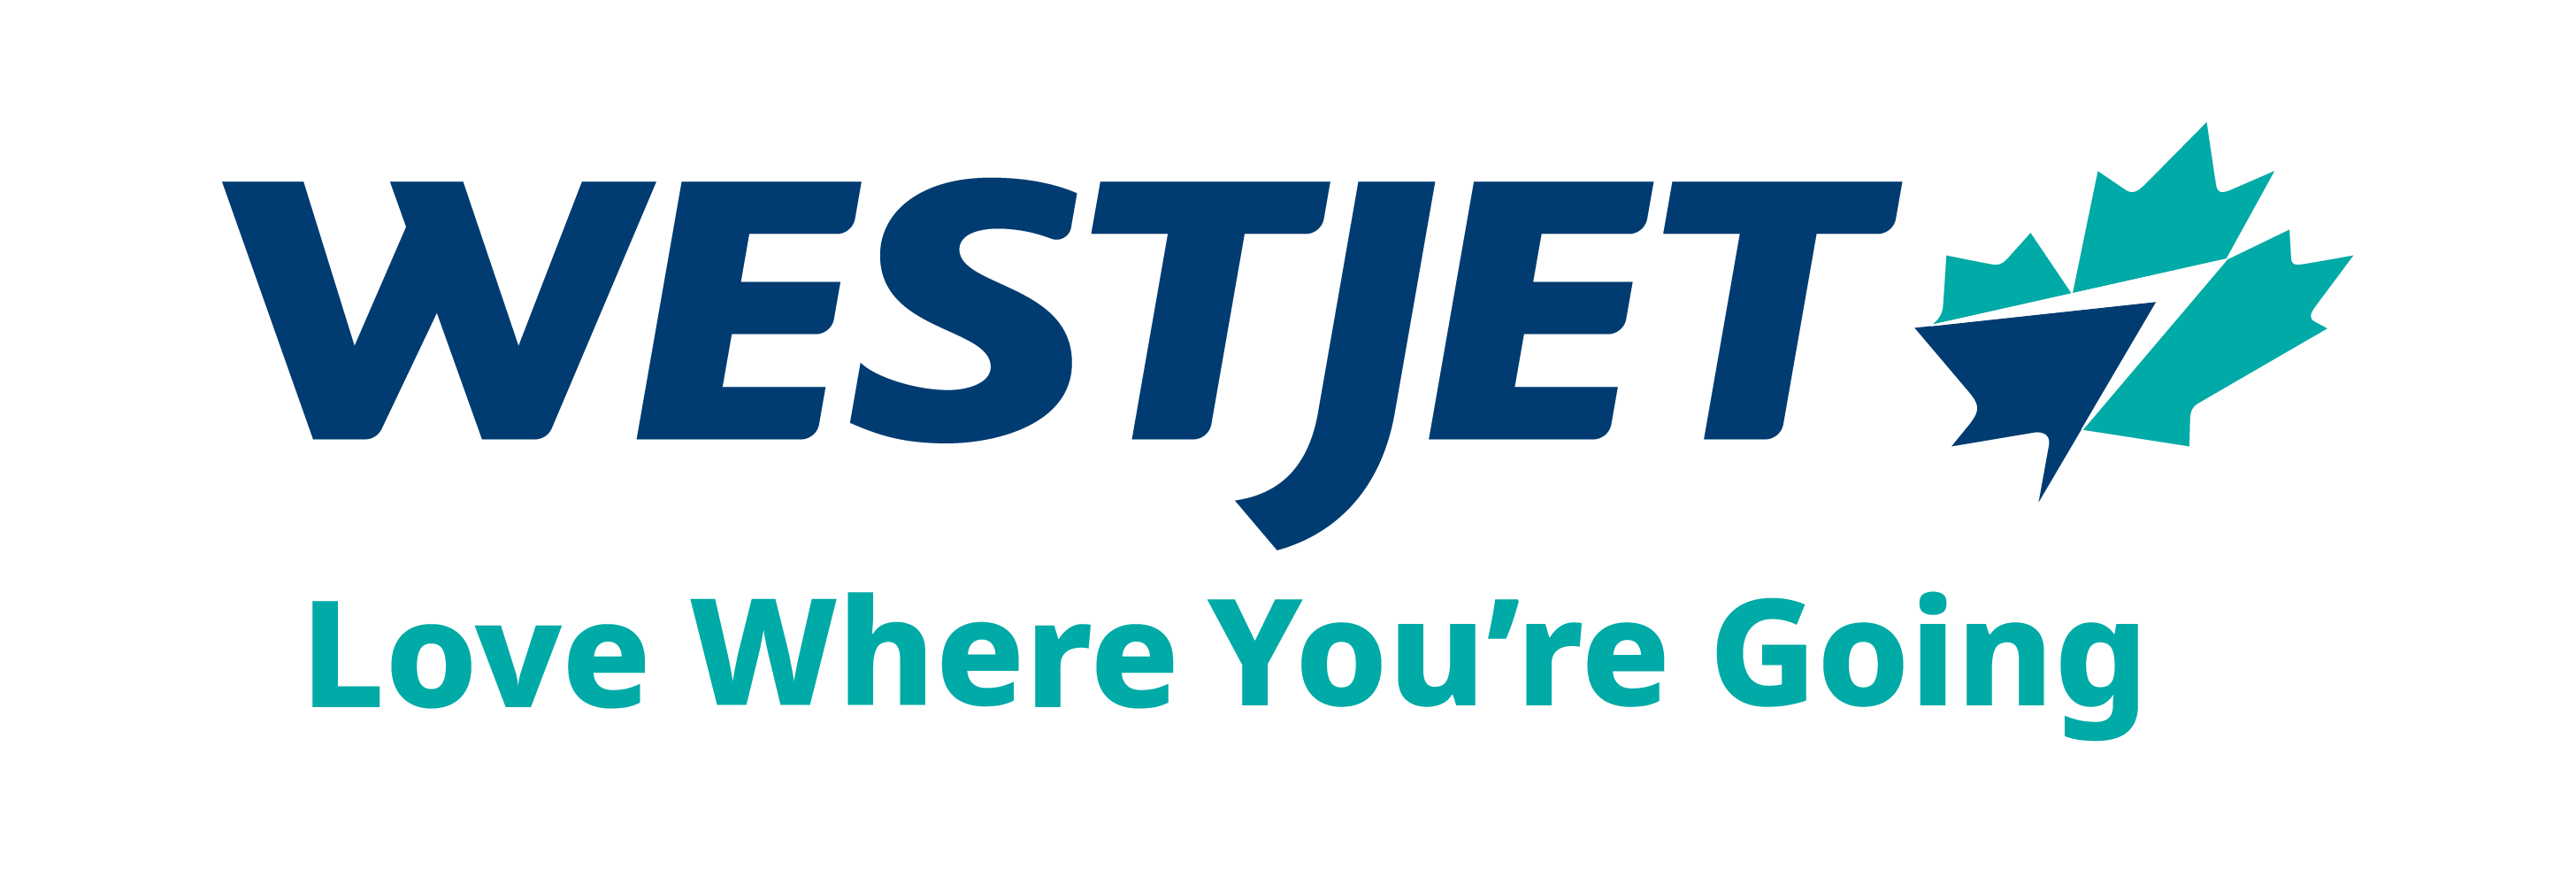 WestJet 